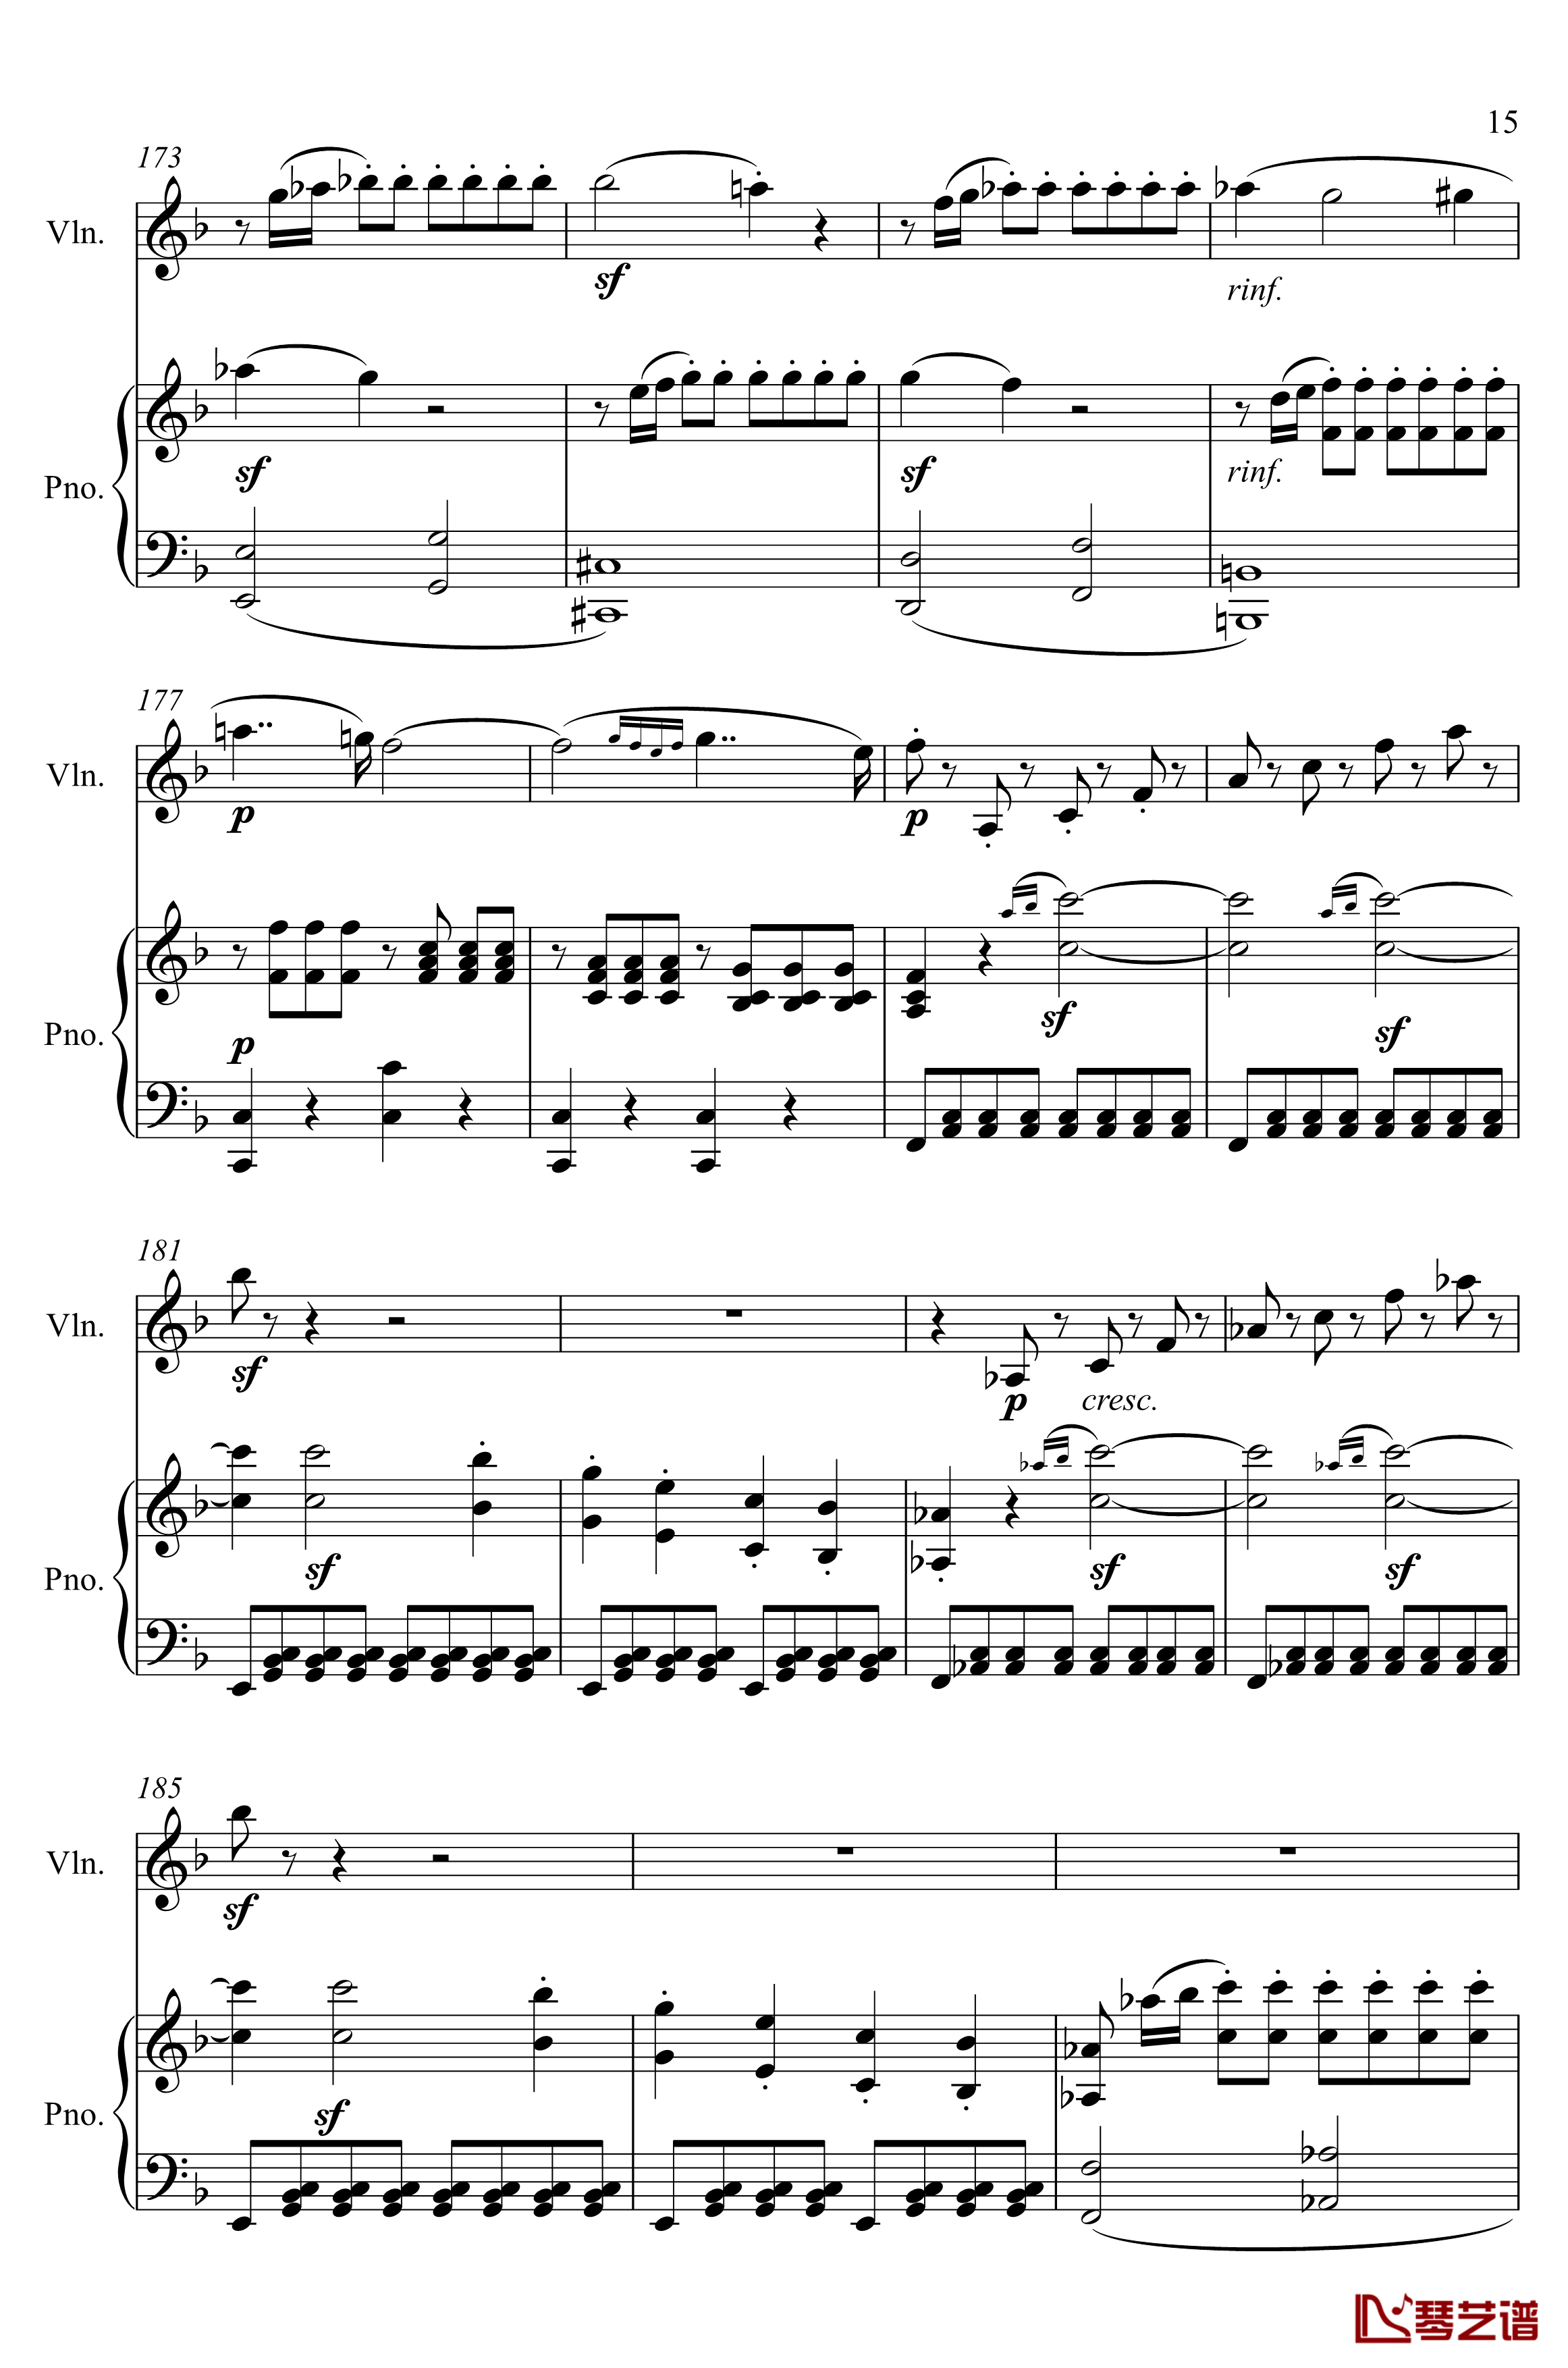 第5小提琴与钢琴奏鸣曲钢琴谱-第一乐章钢琴谱-贝多芬-beethoven15